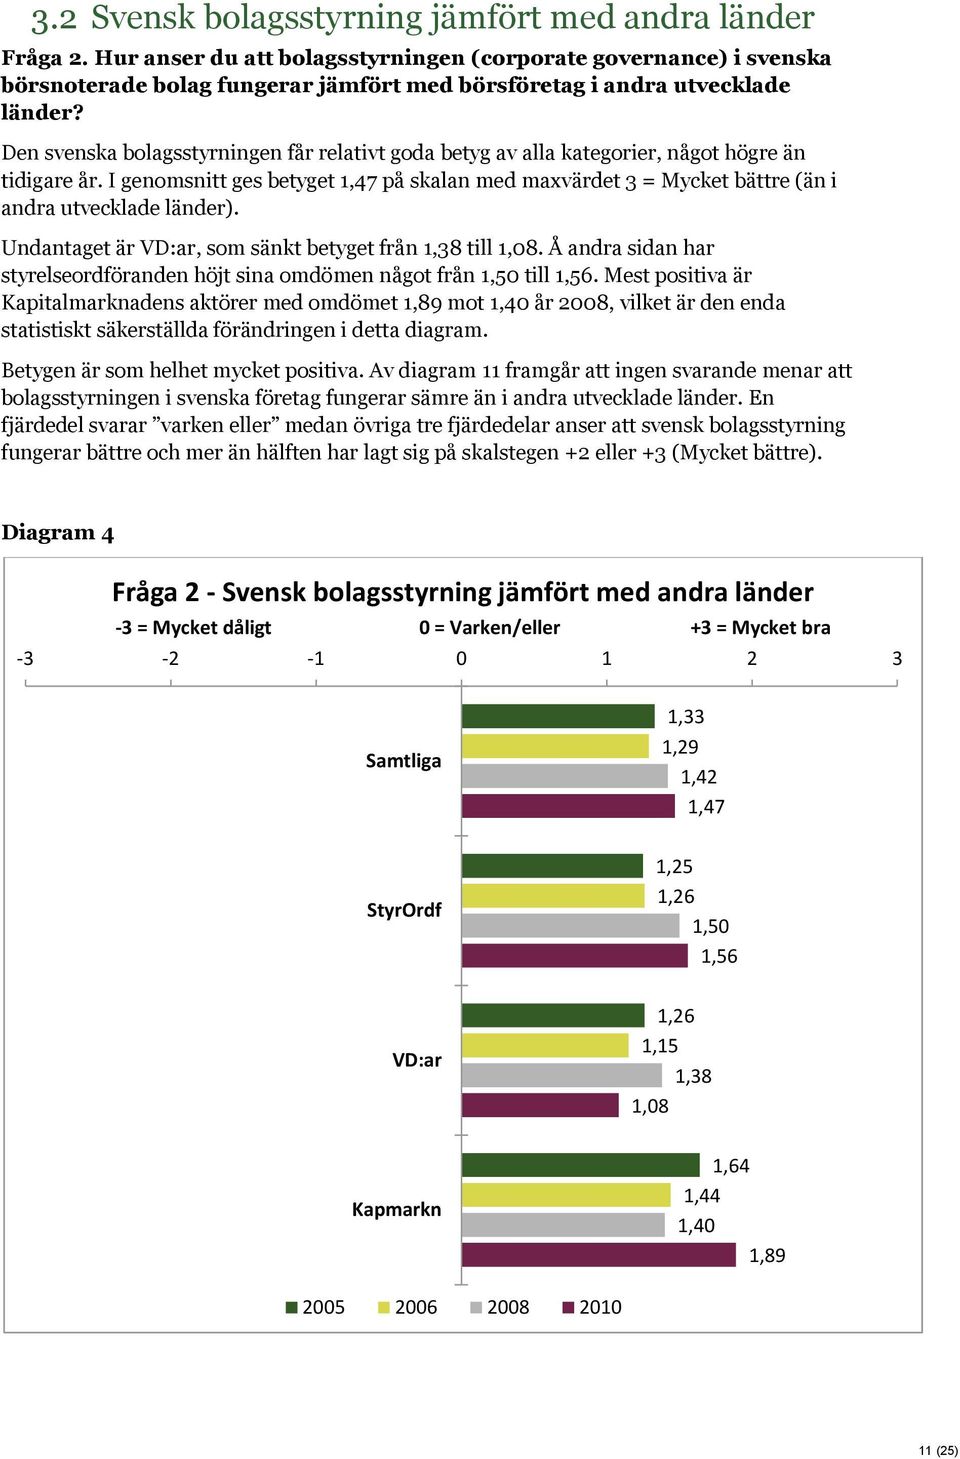 Den svenska bolagsstyrningen får relativt goda betyg av alla kategorier, något högre än tidigare år.